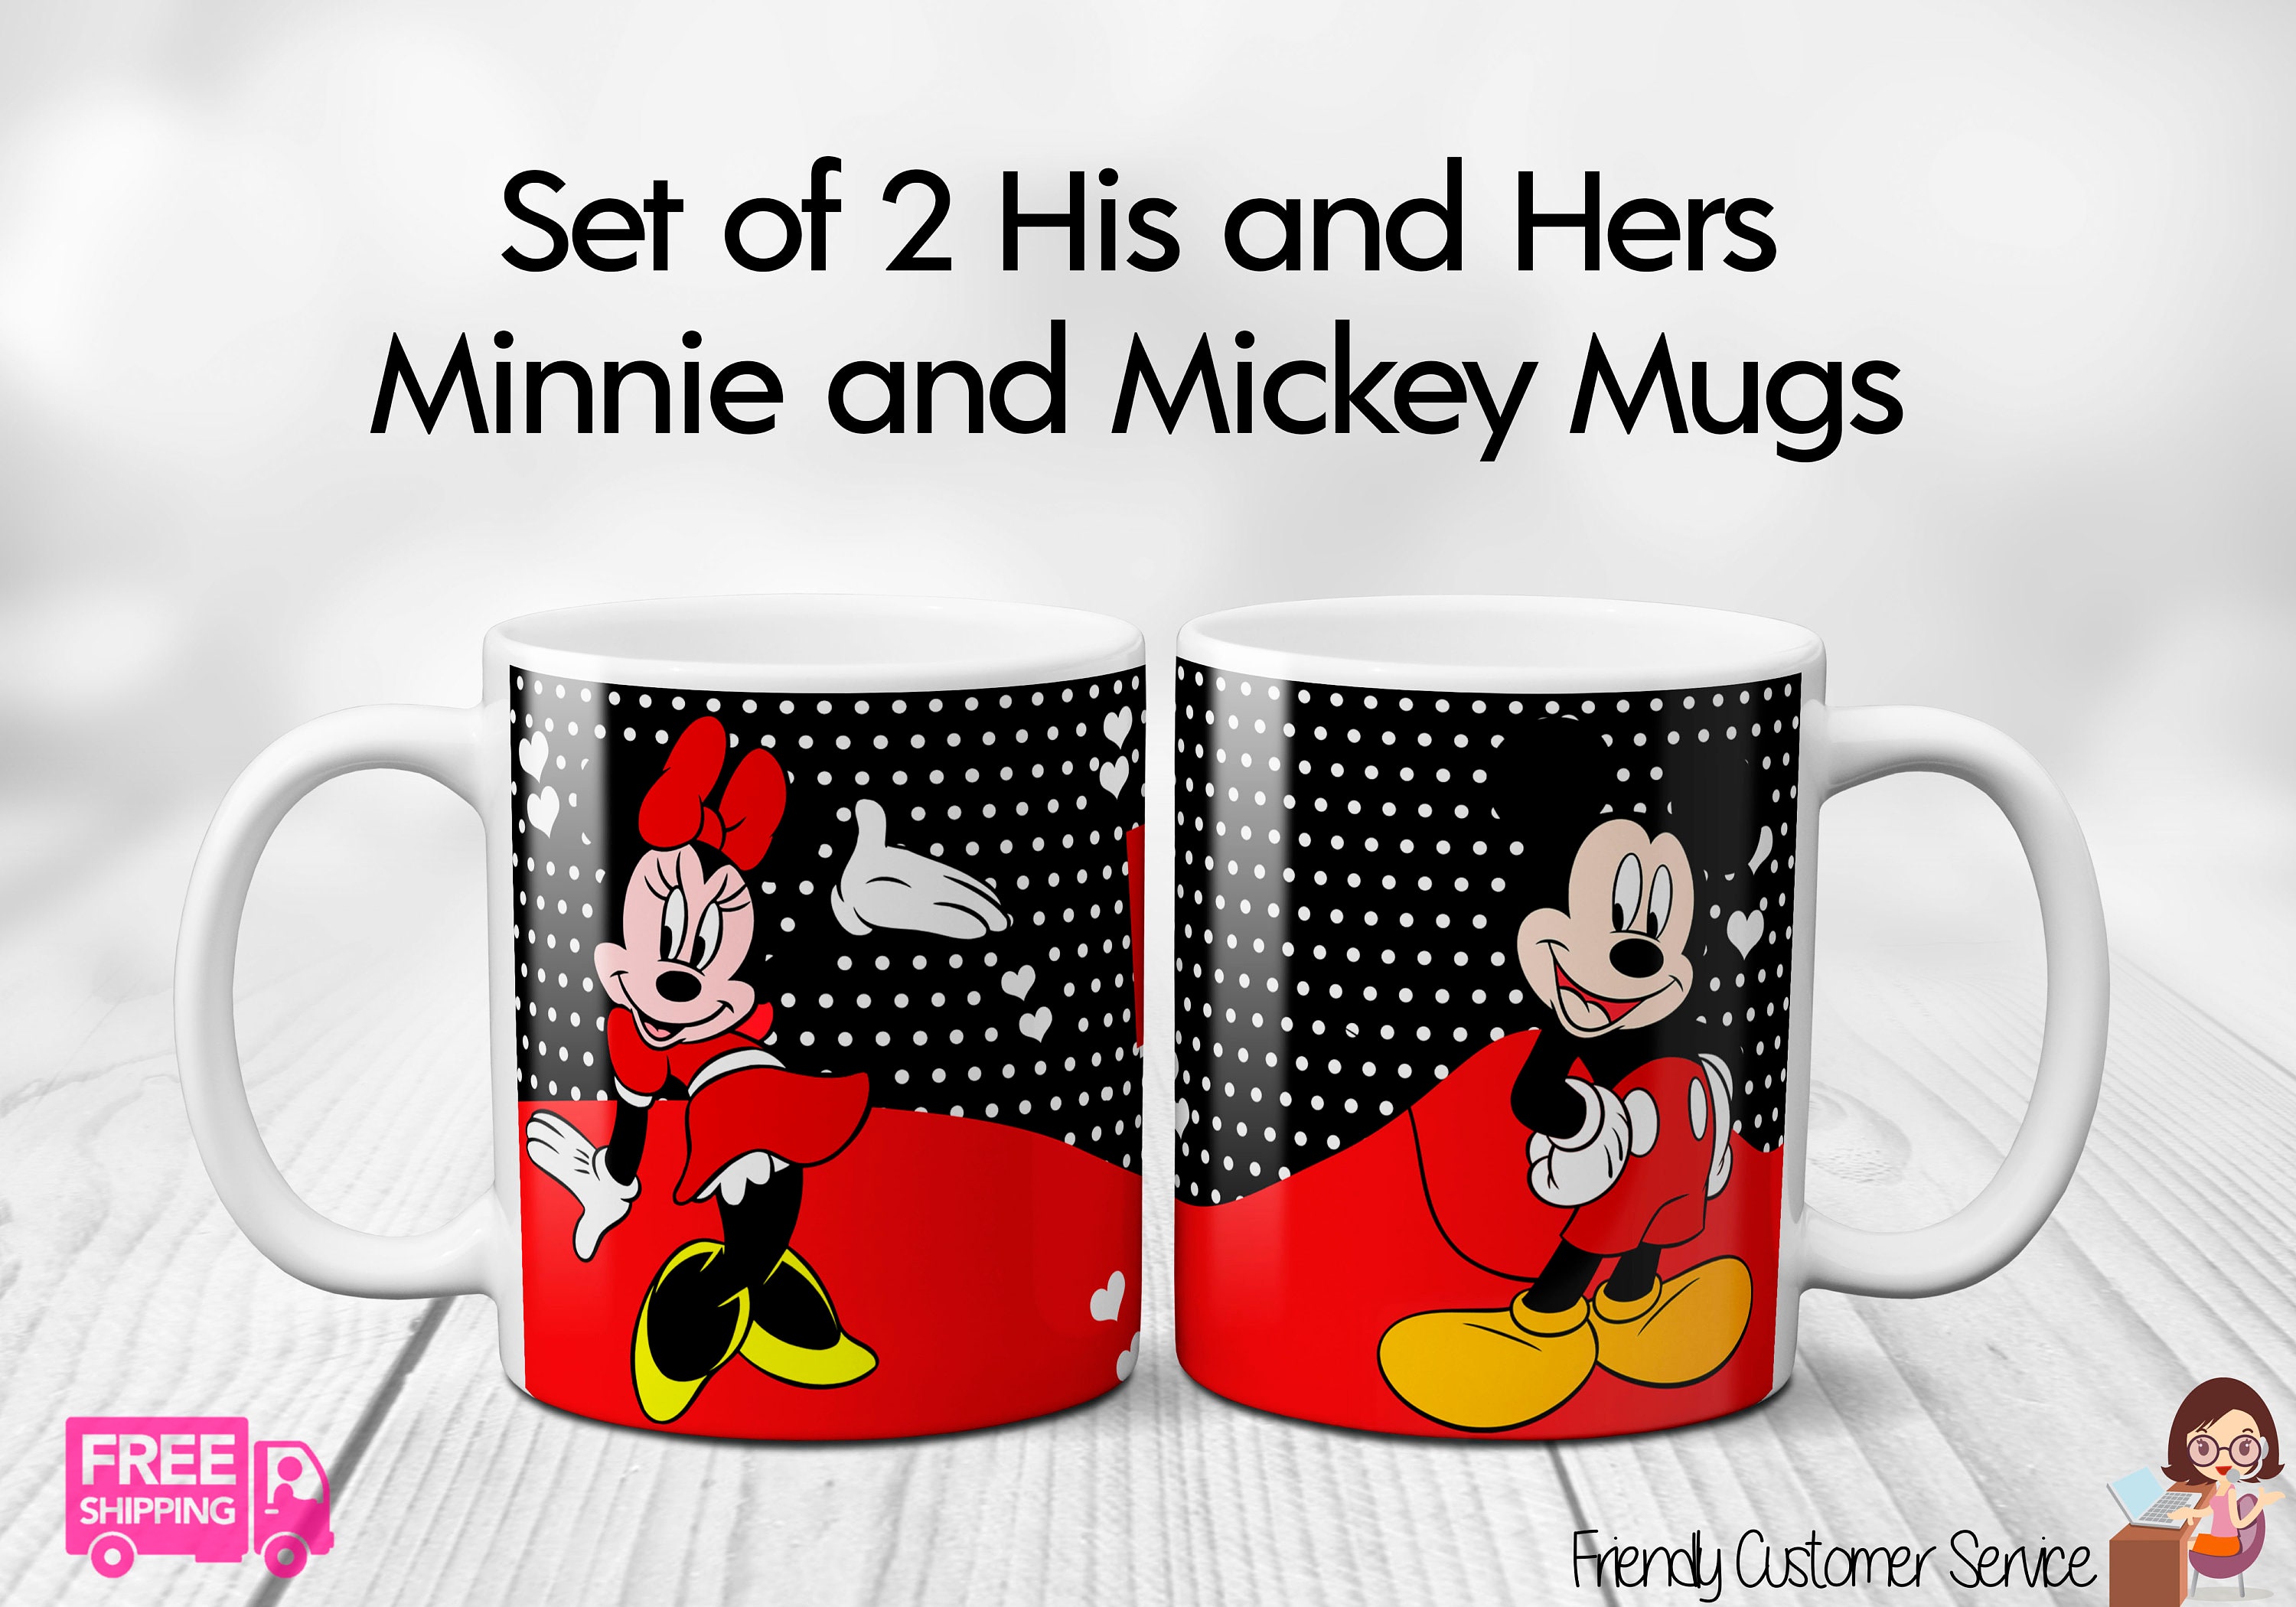 Disney Mädchen Verschiedene Minnie Mouse Designs 12 Paar Socken Variety Set 